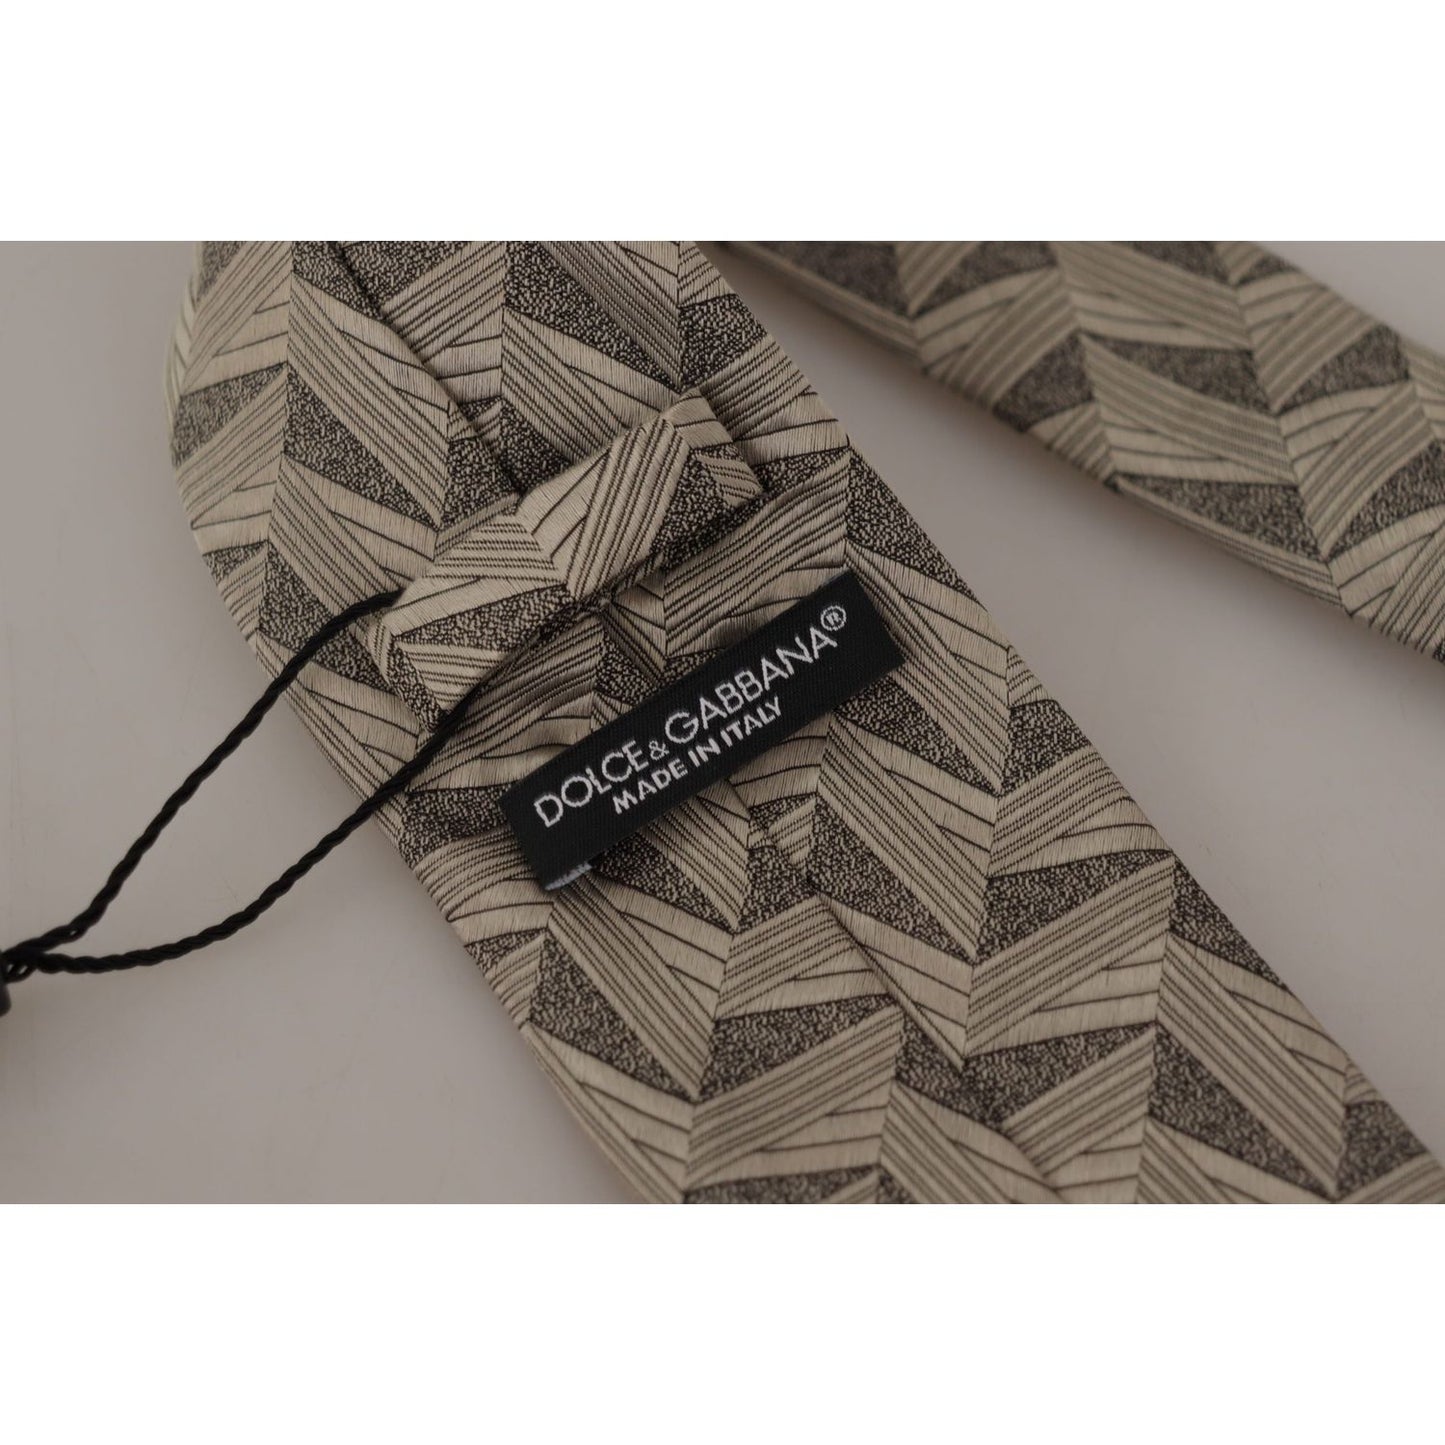 Dolce & Gabbana Stunning Beige Silk Bow Tie beige-fantasy-pattern-adjustable-necktie-accessory-tie